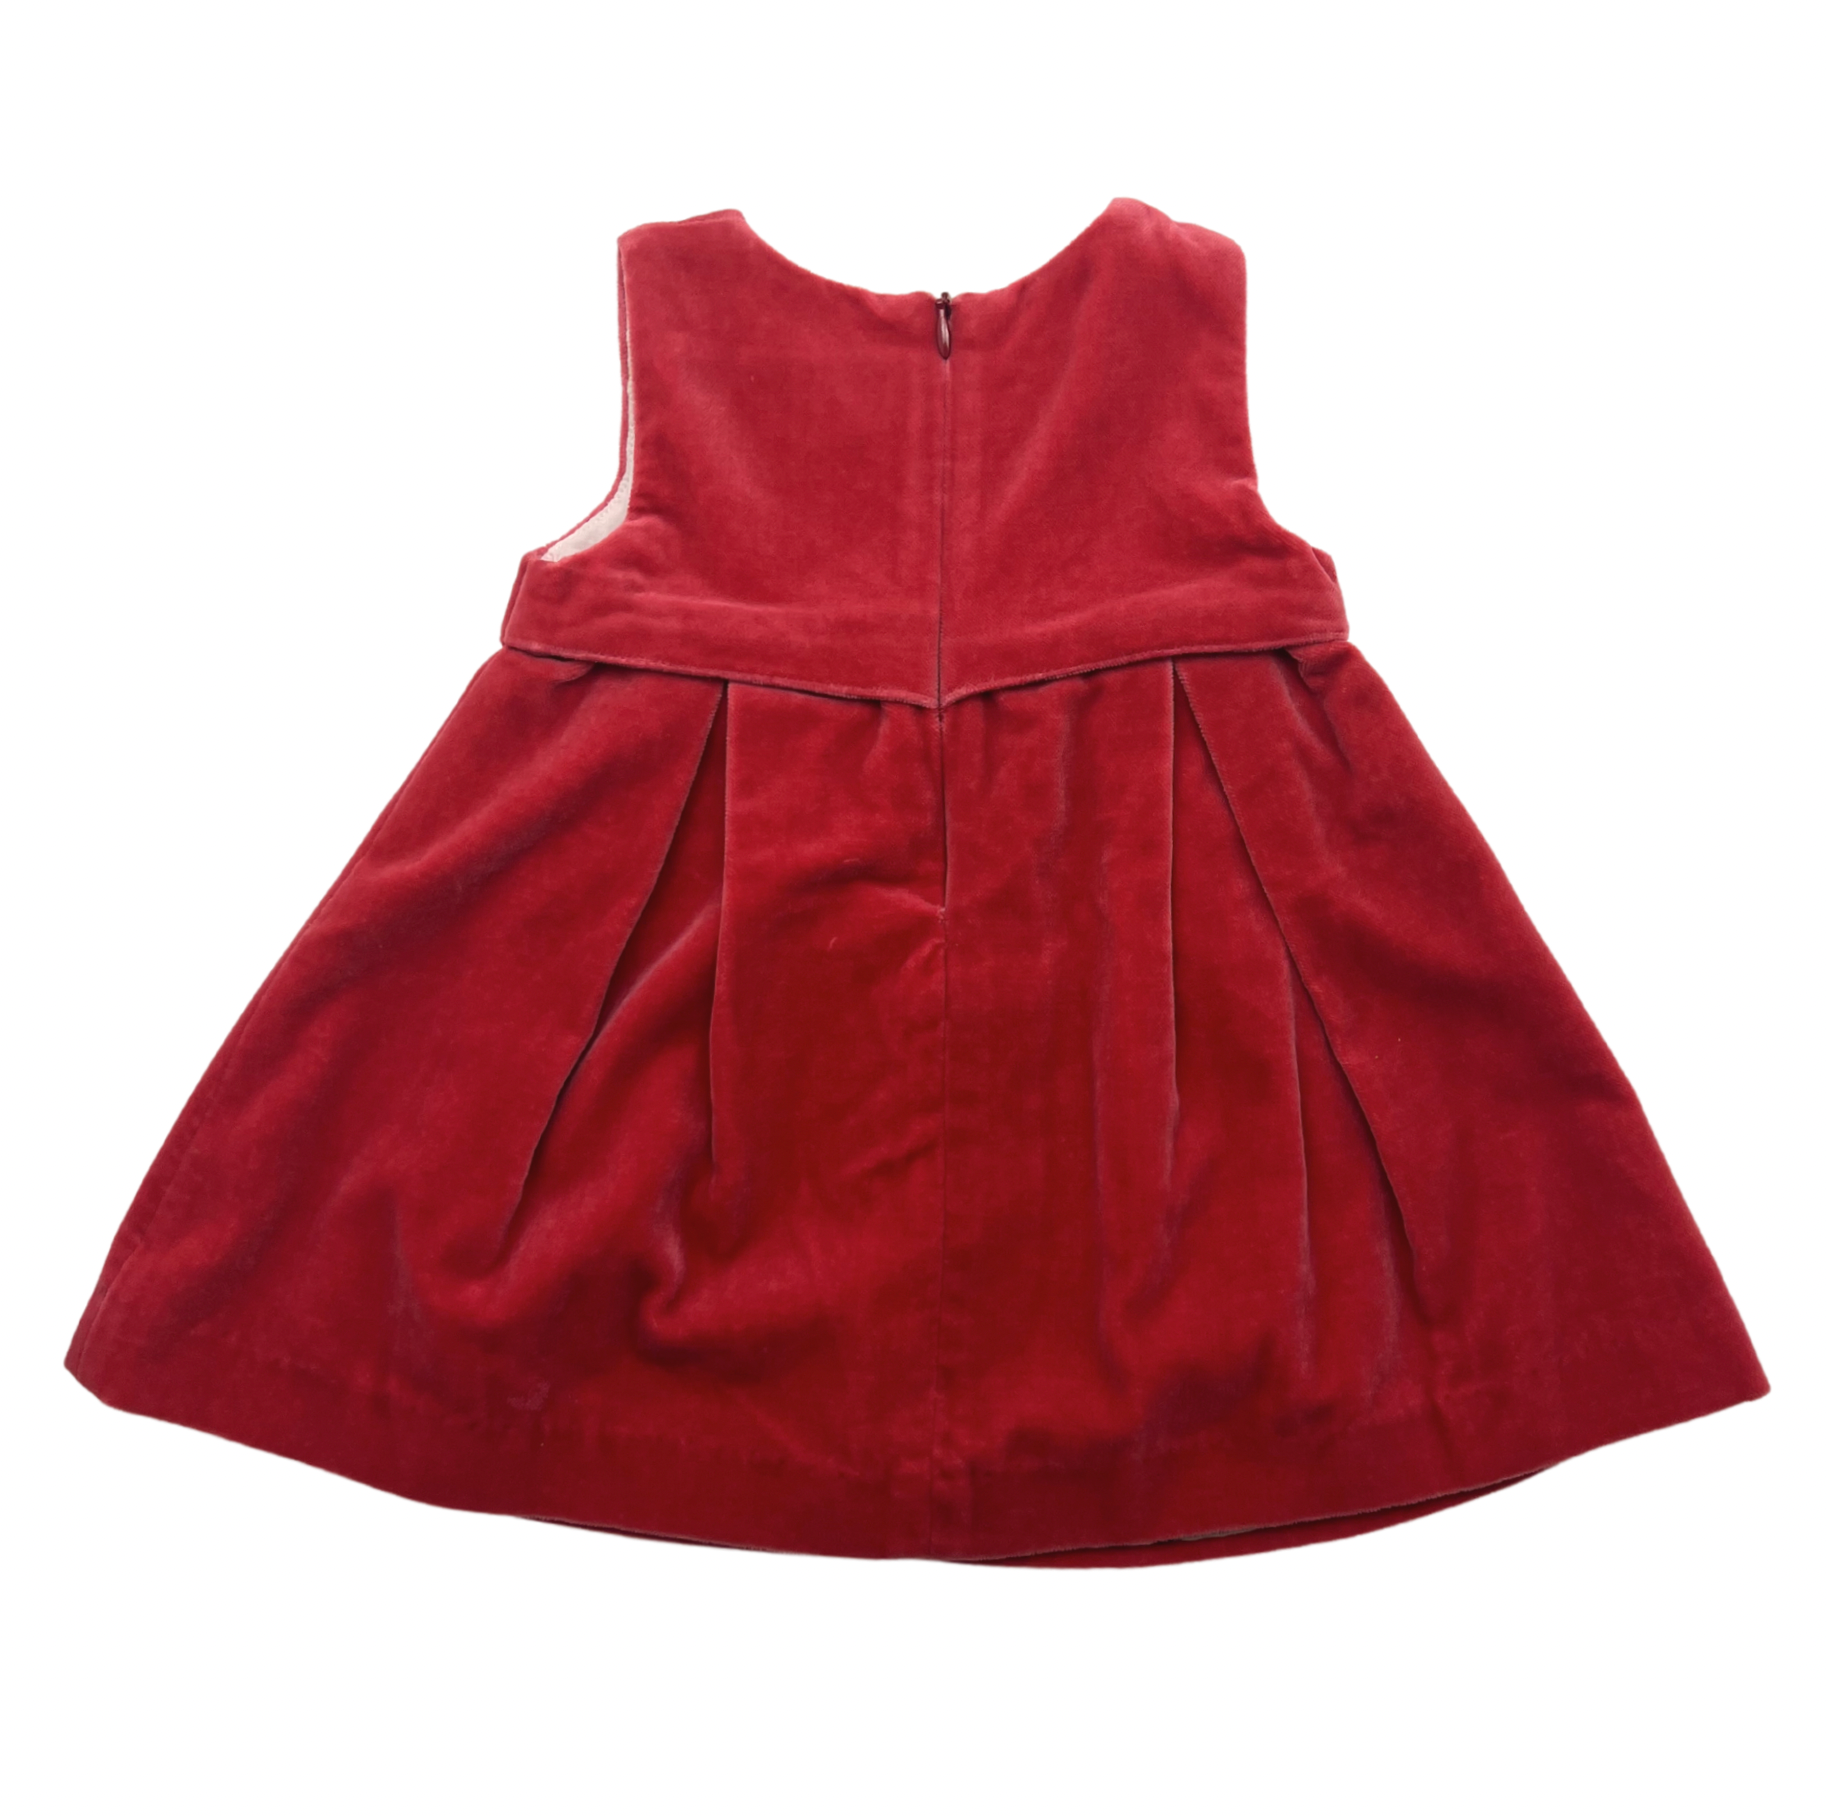 BURBERRY - Robe en velours rouge - 6 mois